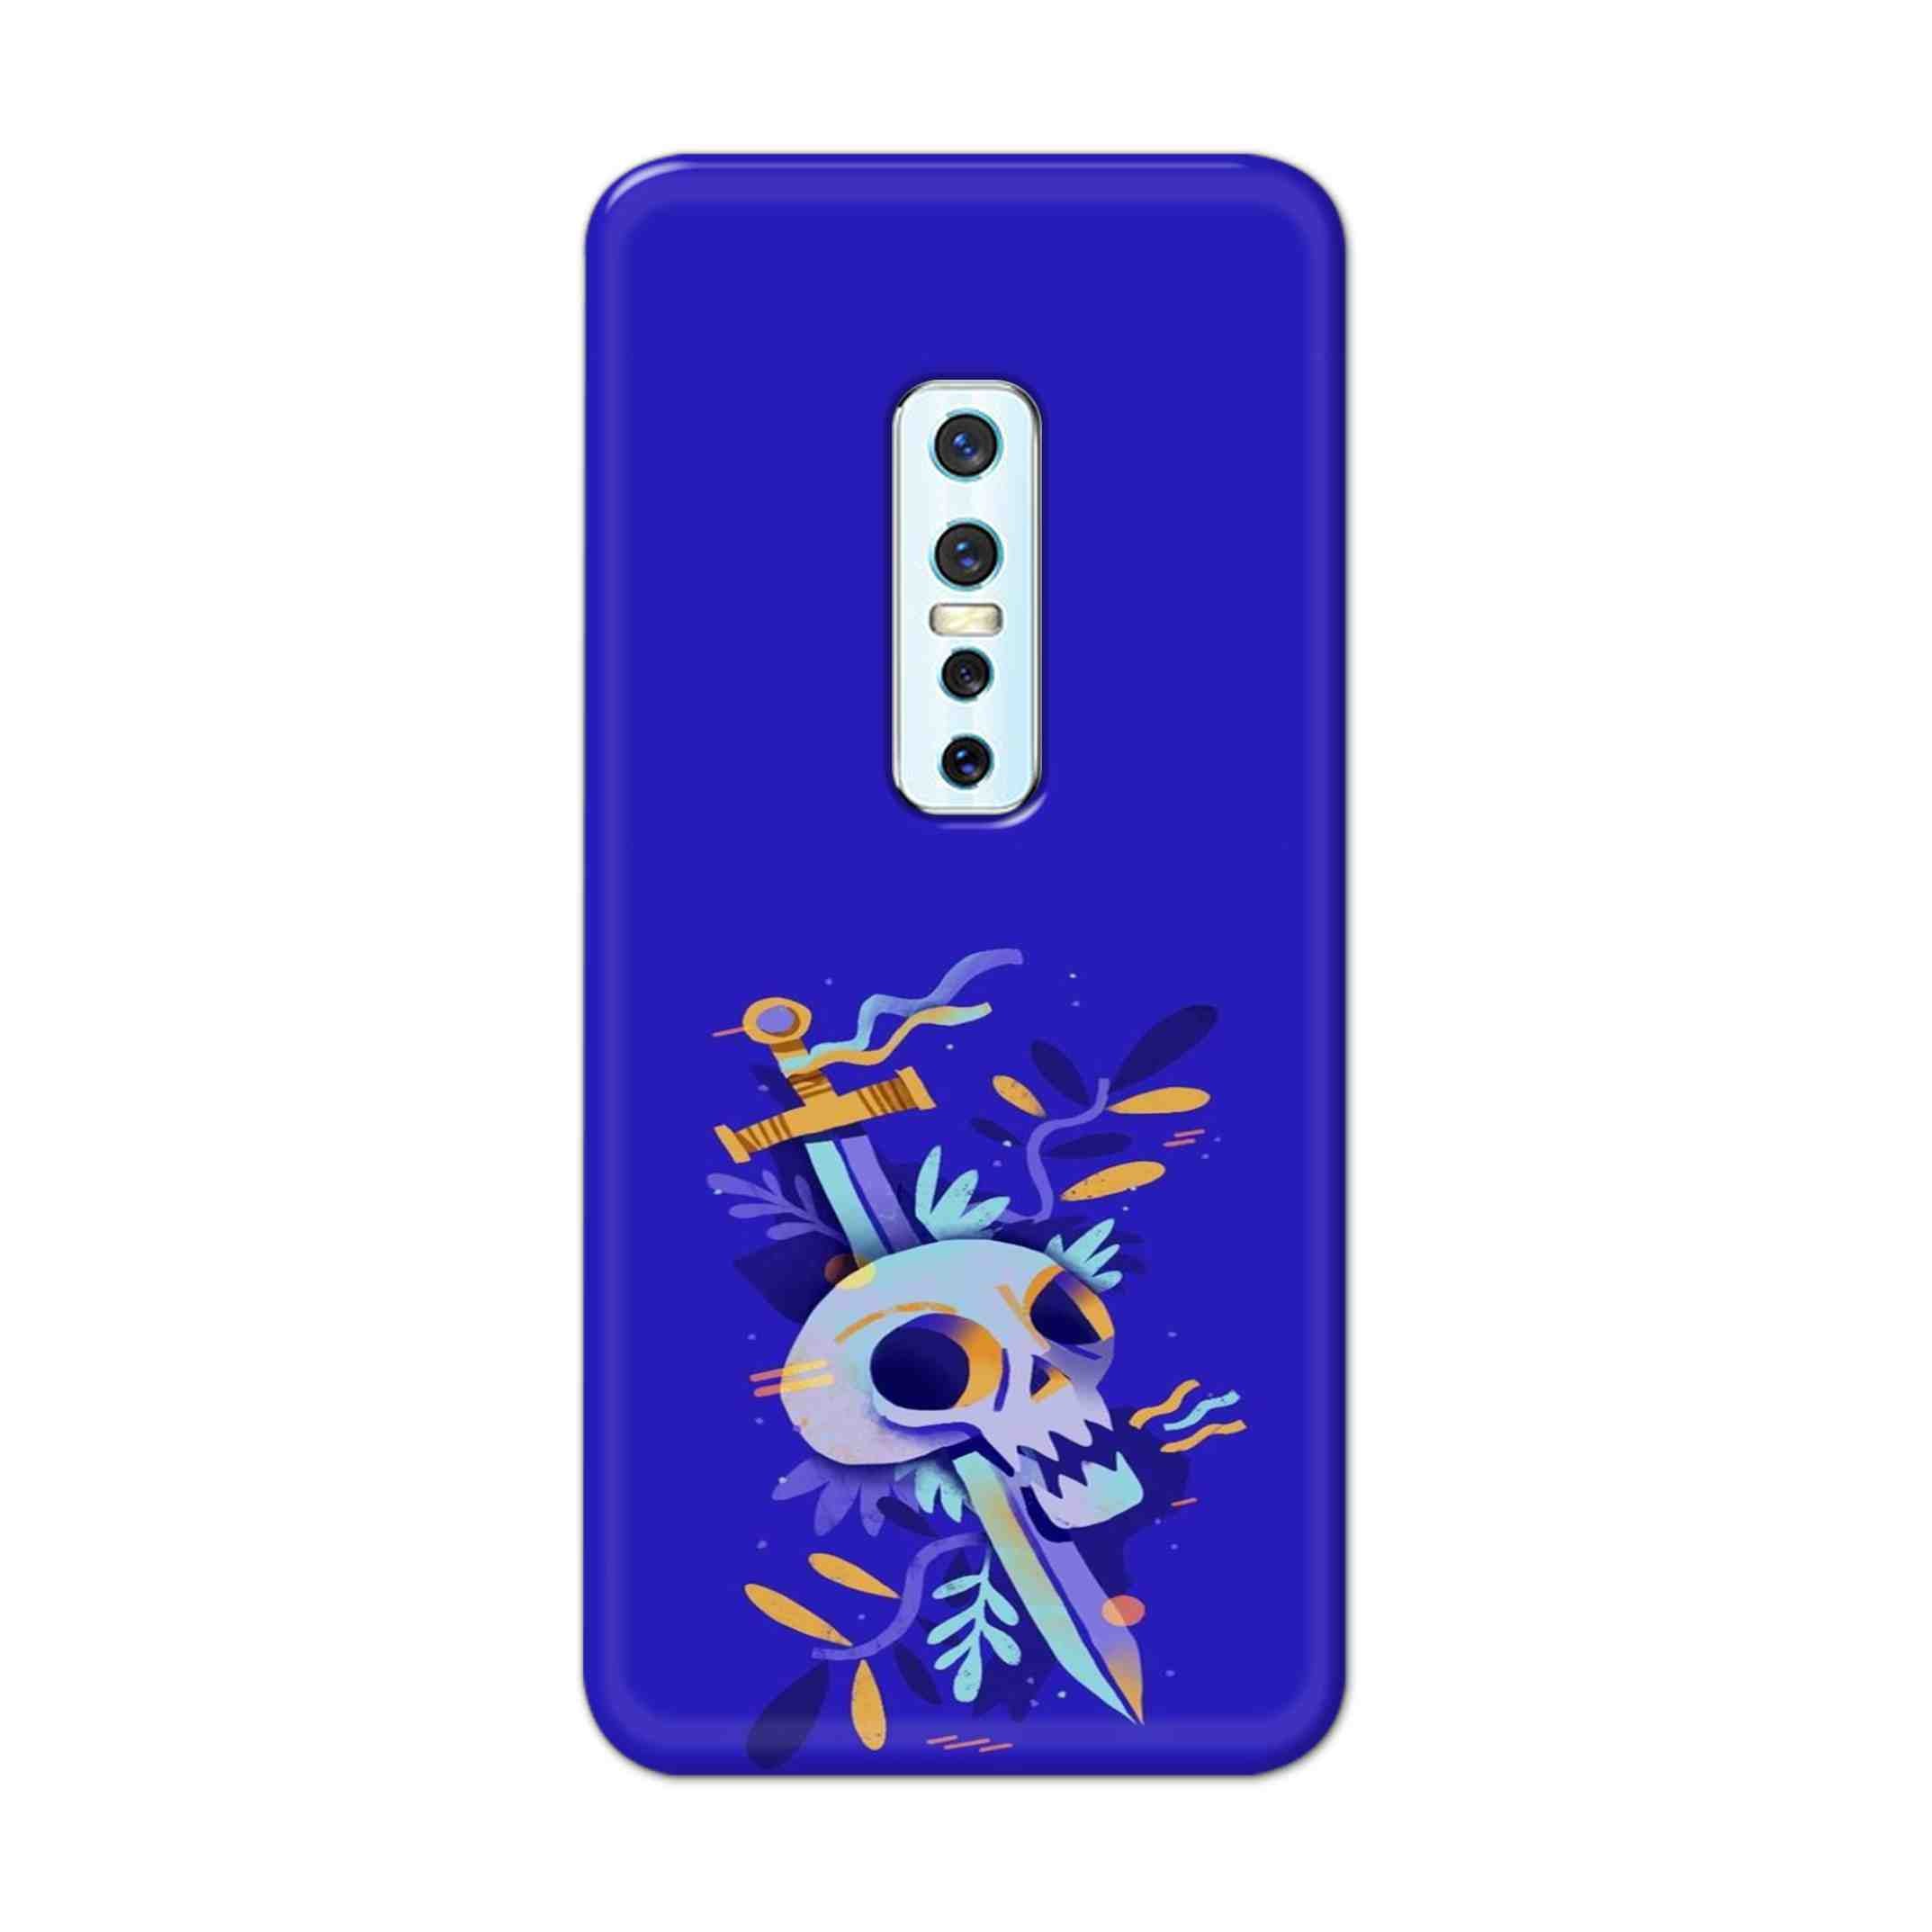 Buy Blue Skull Hard Back Mobile Phone Case Cover For Vivo V17 Pro Online